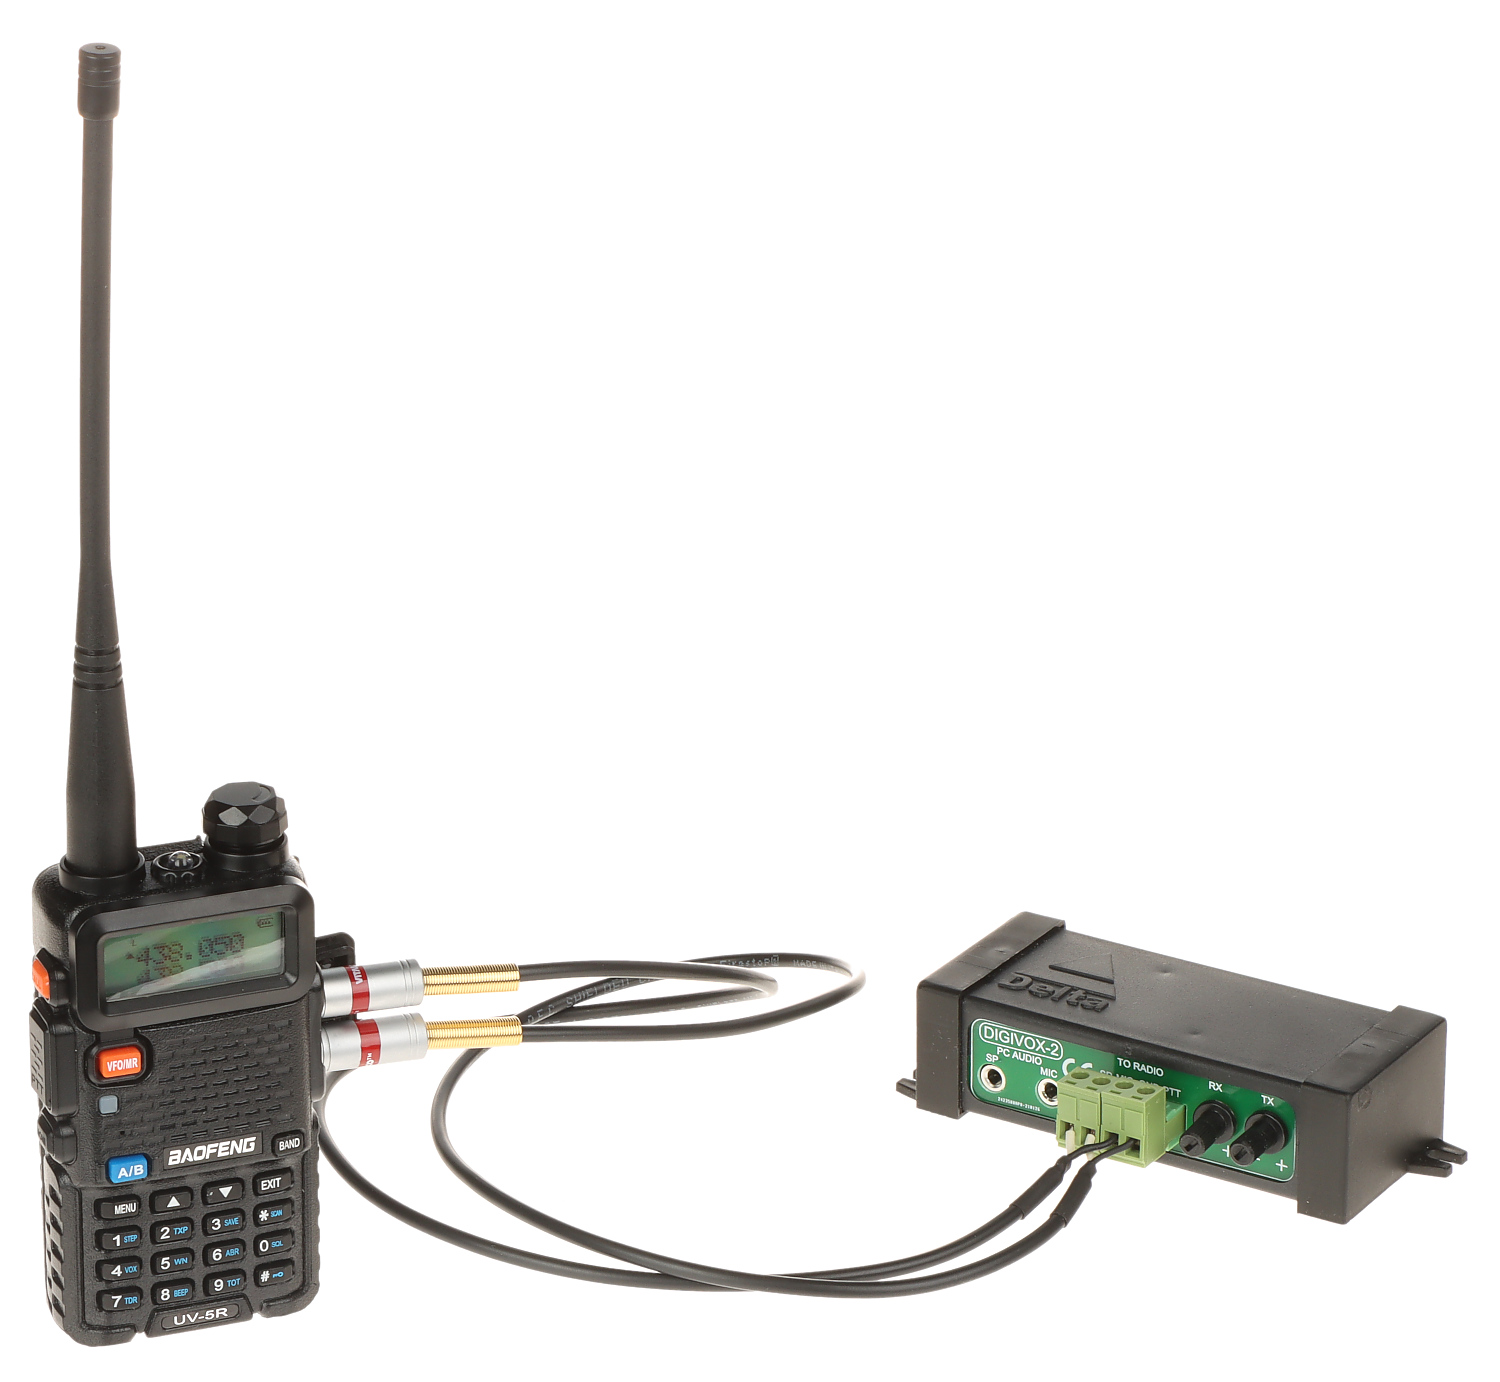 BAOFENG UV-5R PLUS VHF/UHF DUAL BAND PMR RADIO 136-174 400-520 MHZ  TRANSCEIVER